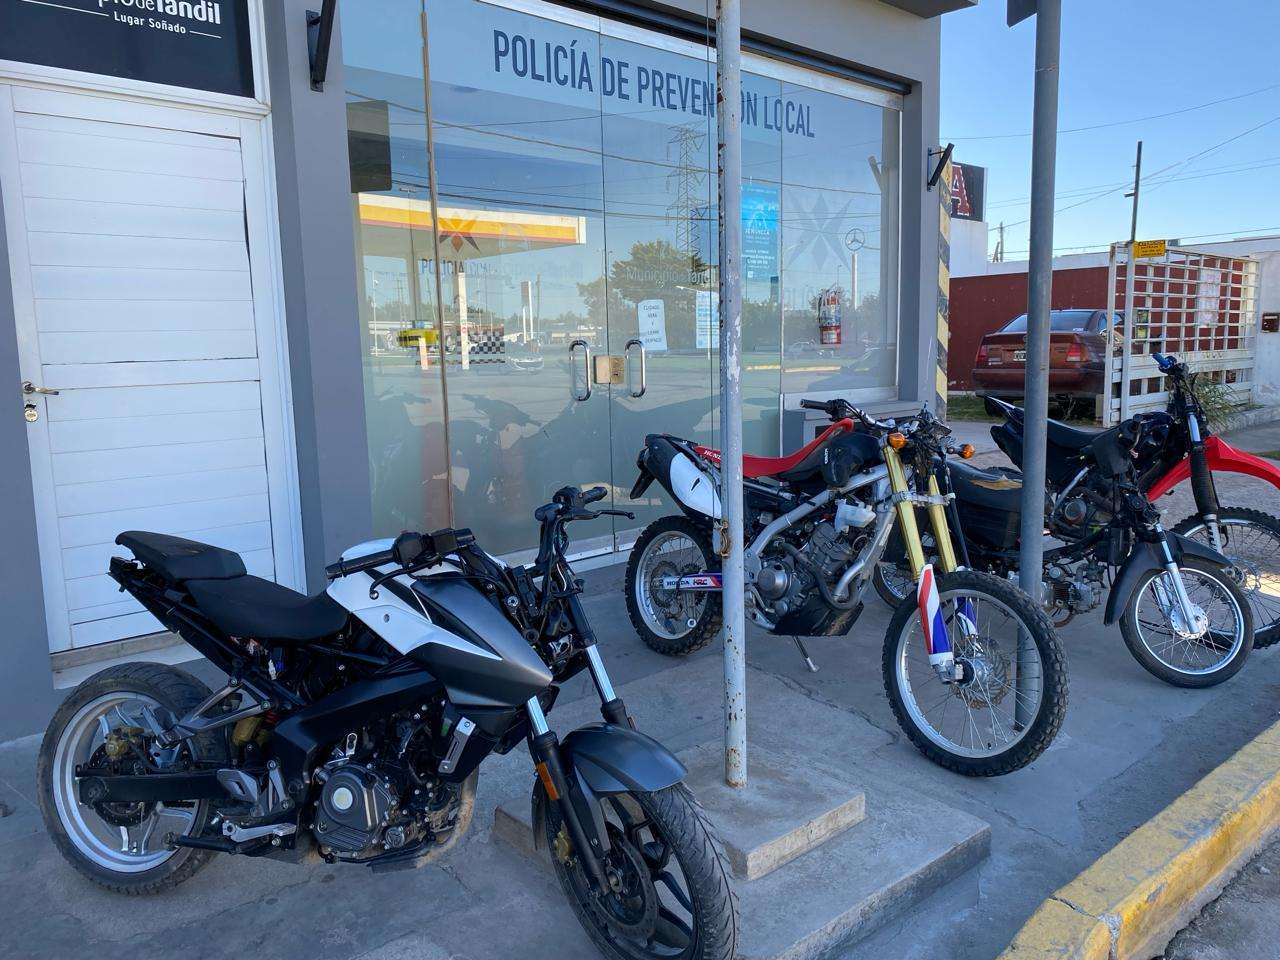 La Policía recuperó cuatro motos que habían sido robadas